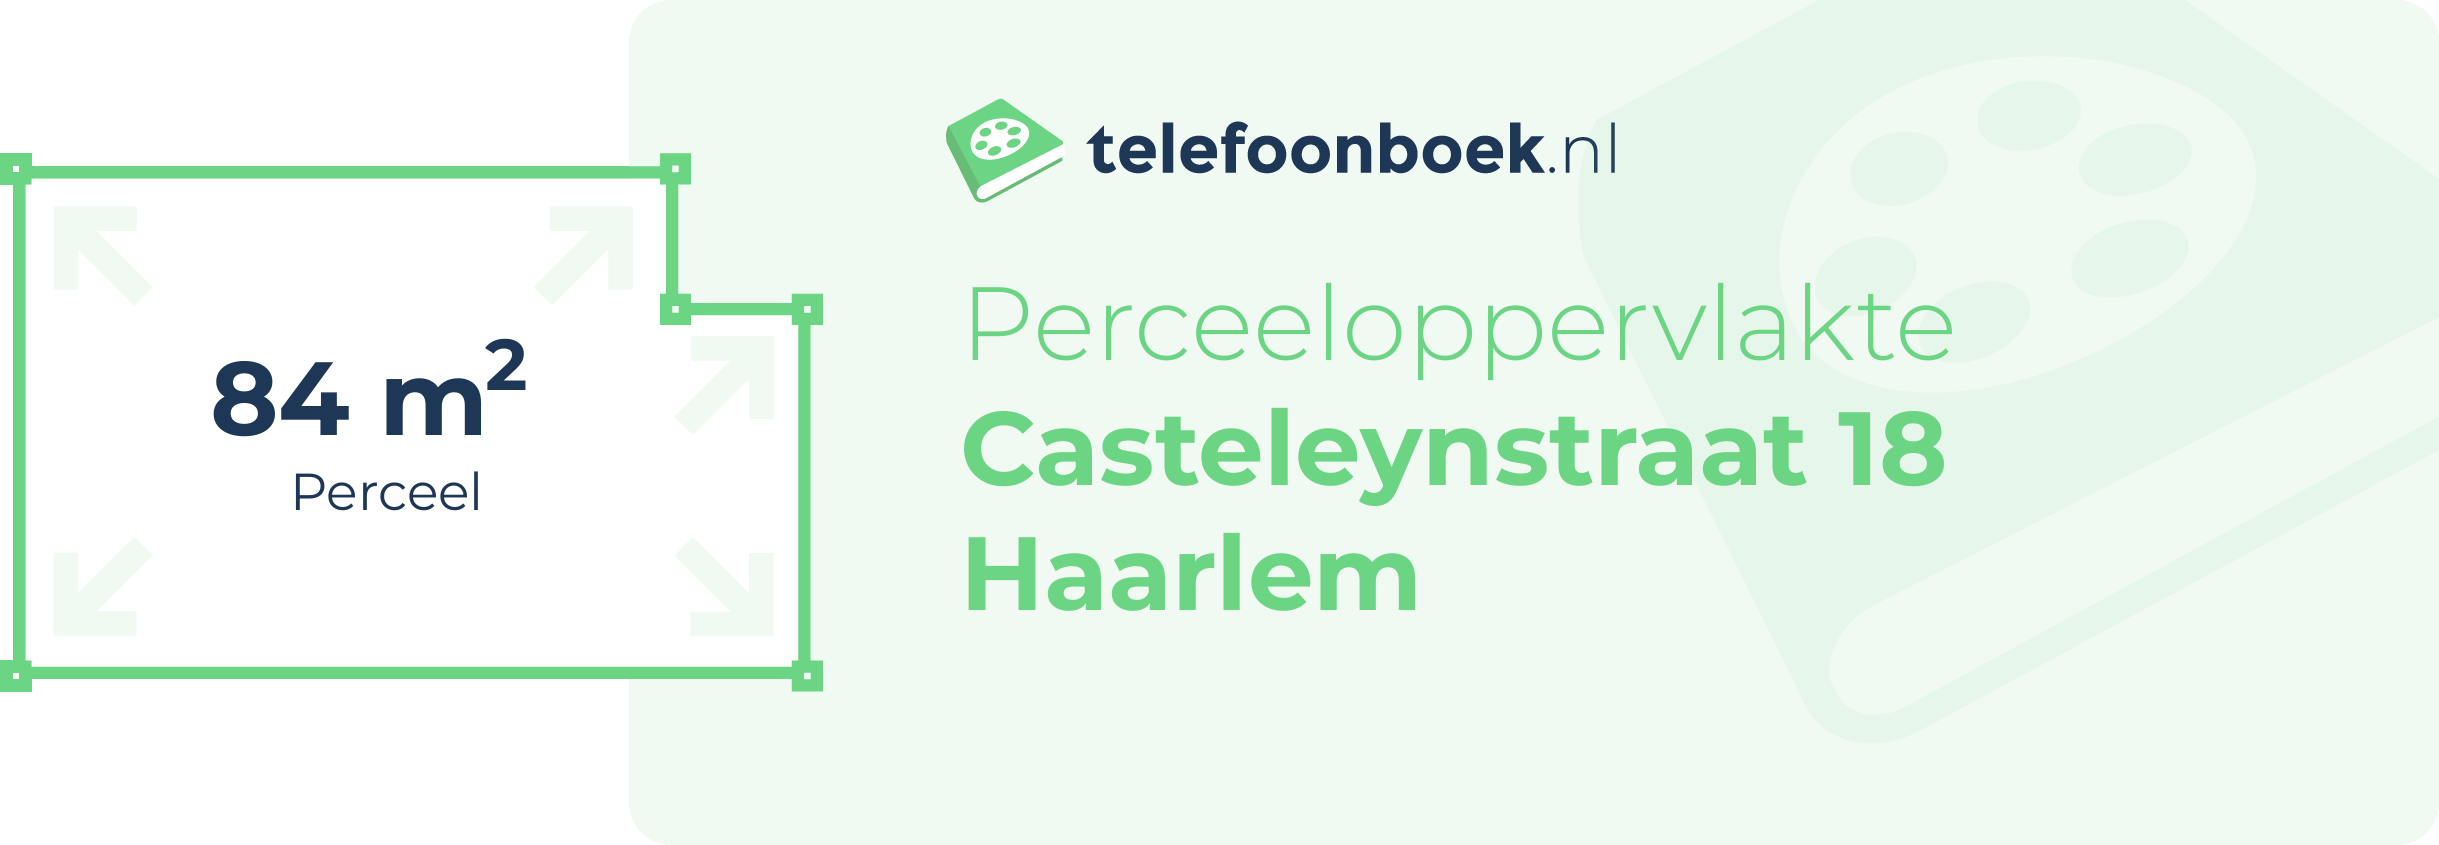 Perceeloppervlakte Casteleynstraat 18 Haarlem